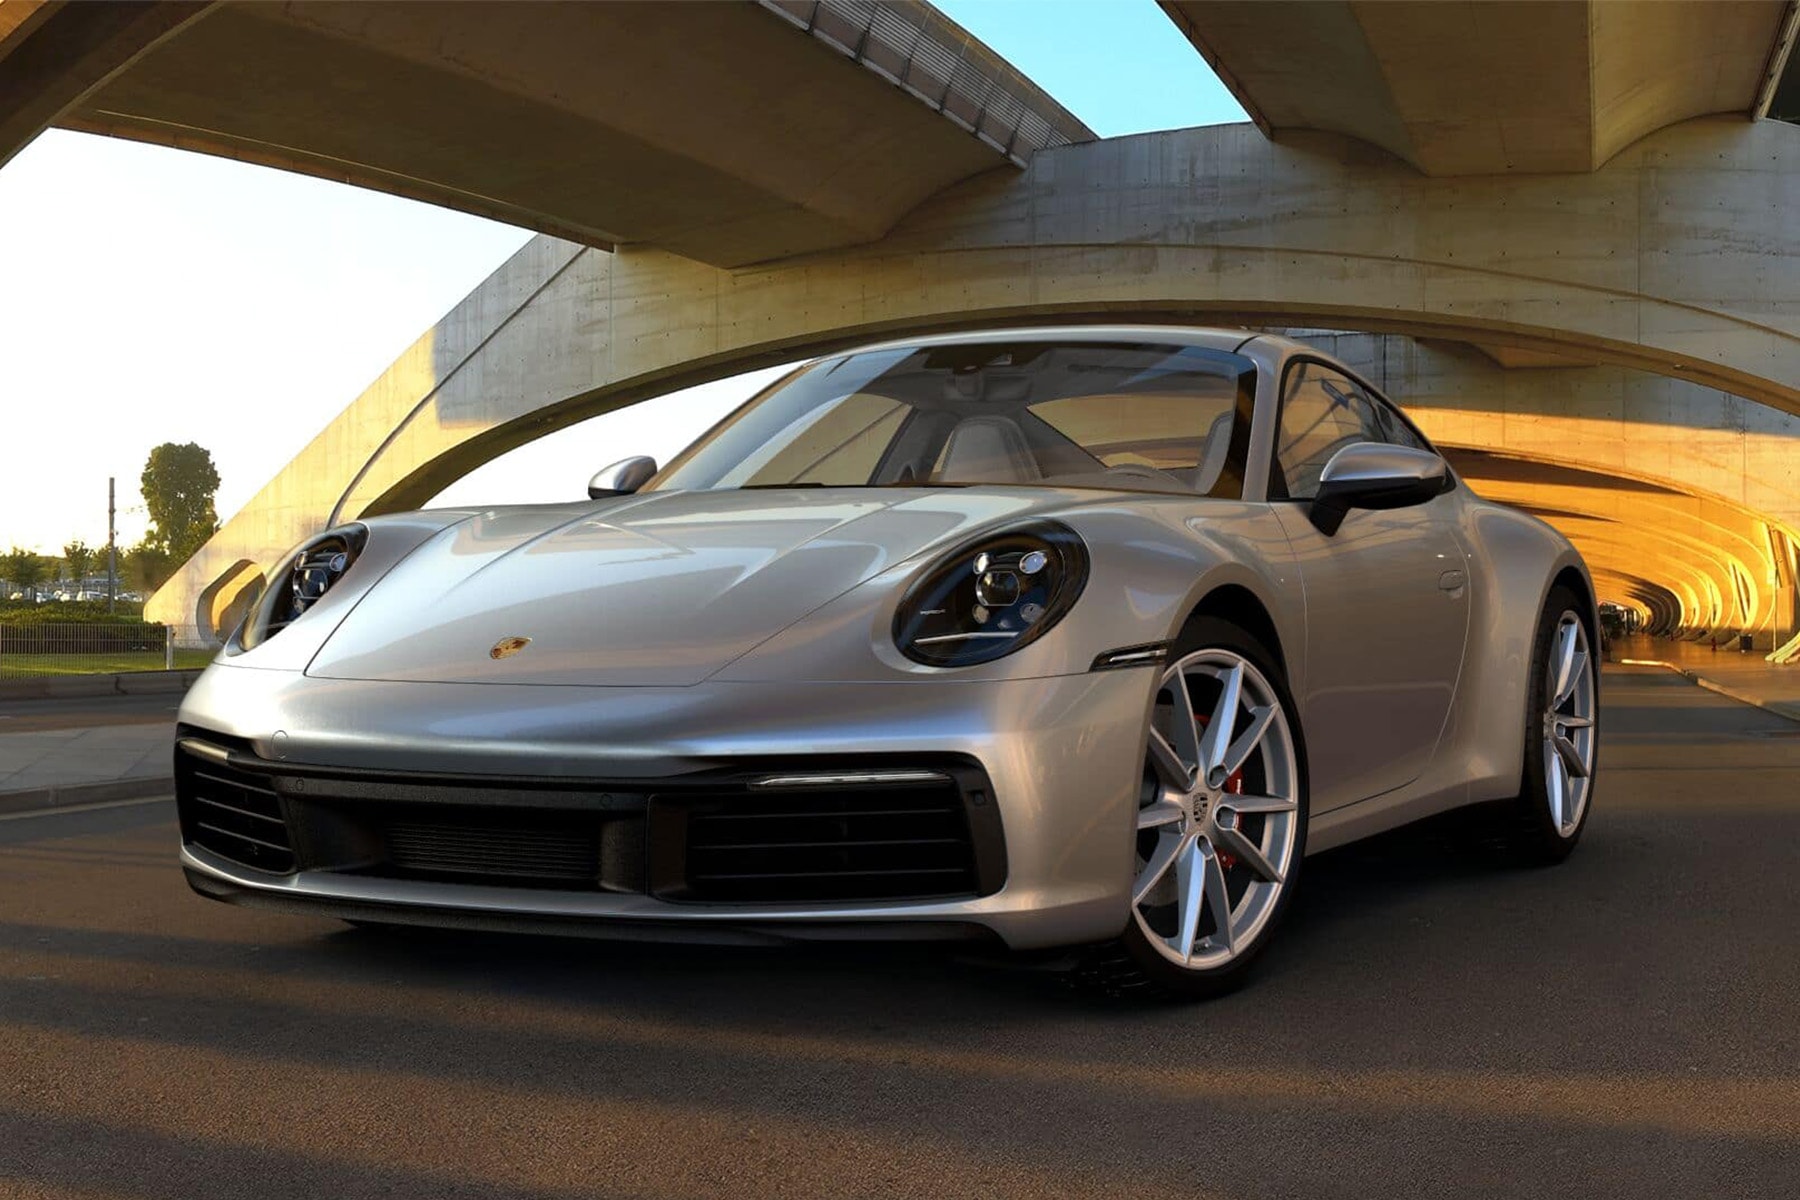 保时捷 Porsche 官方透露将在 2025 年推出油电版本 911 车型